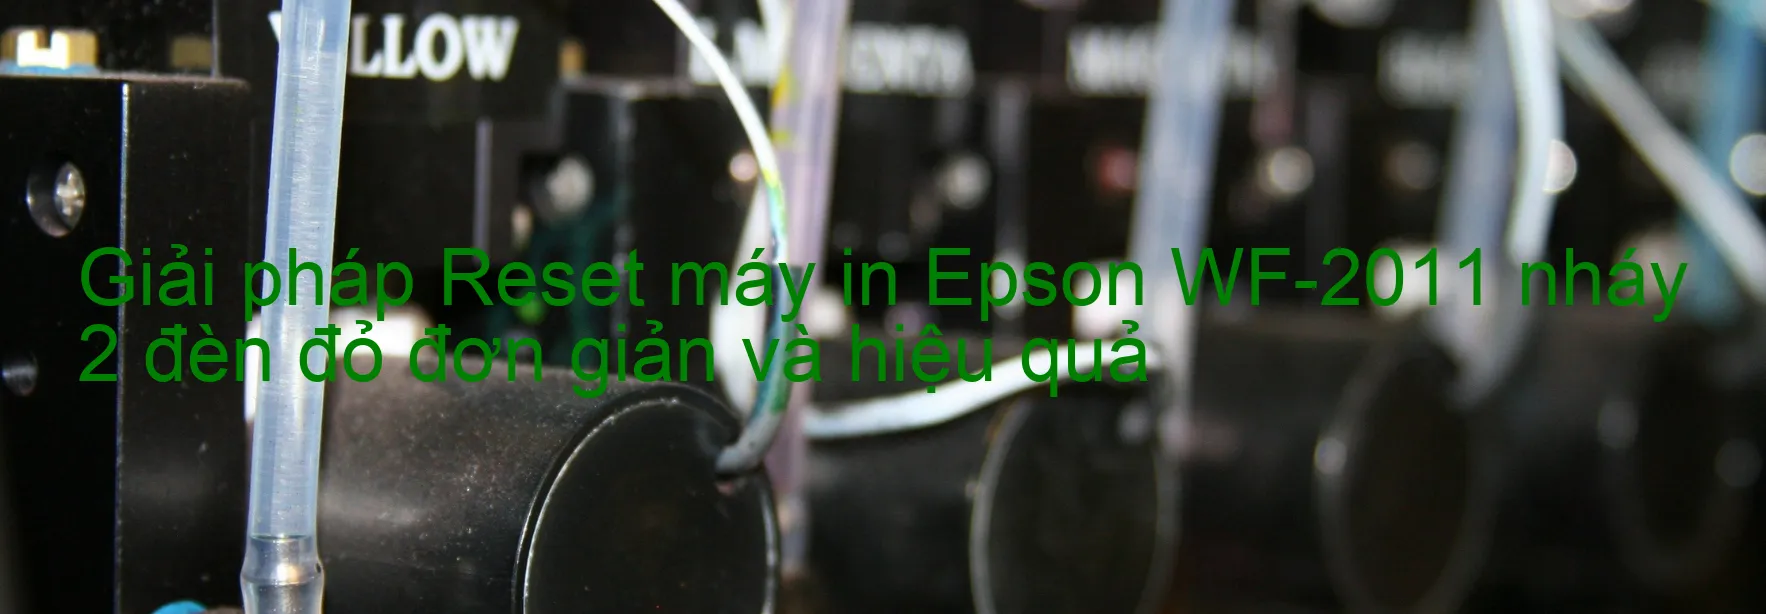 Reset máy in Epson WF-2011 nháy 2 đèn đỏ: Cách khắc phục lỗi một cách đơn giản và hiệu quả